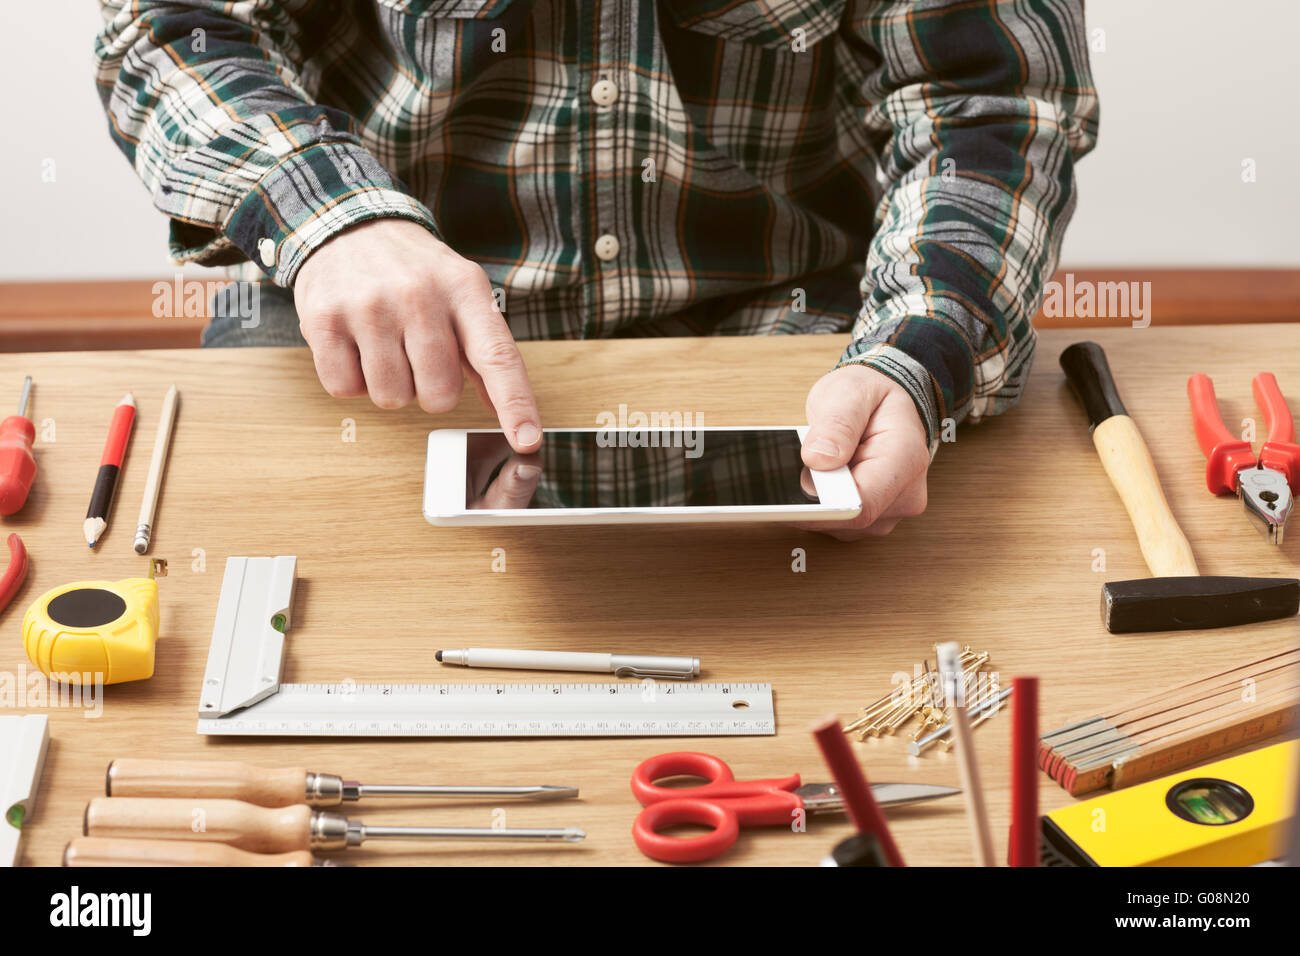 Hombre trabajando en un proyecto de bricolaje en casa con una tableta digital, carpintería y herramientas de construcción sobre una mesa de trabajo, cerrar las manos arriba Foto de stock